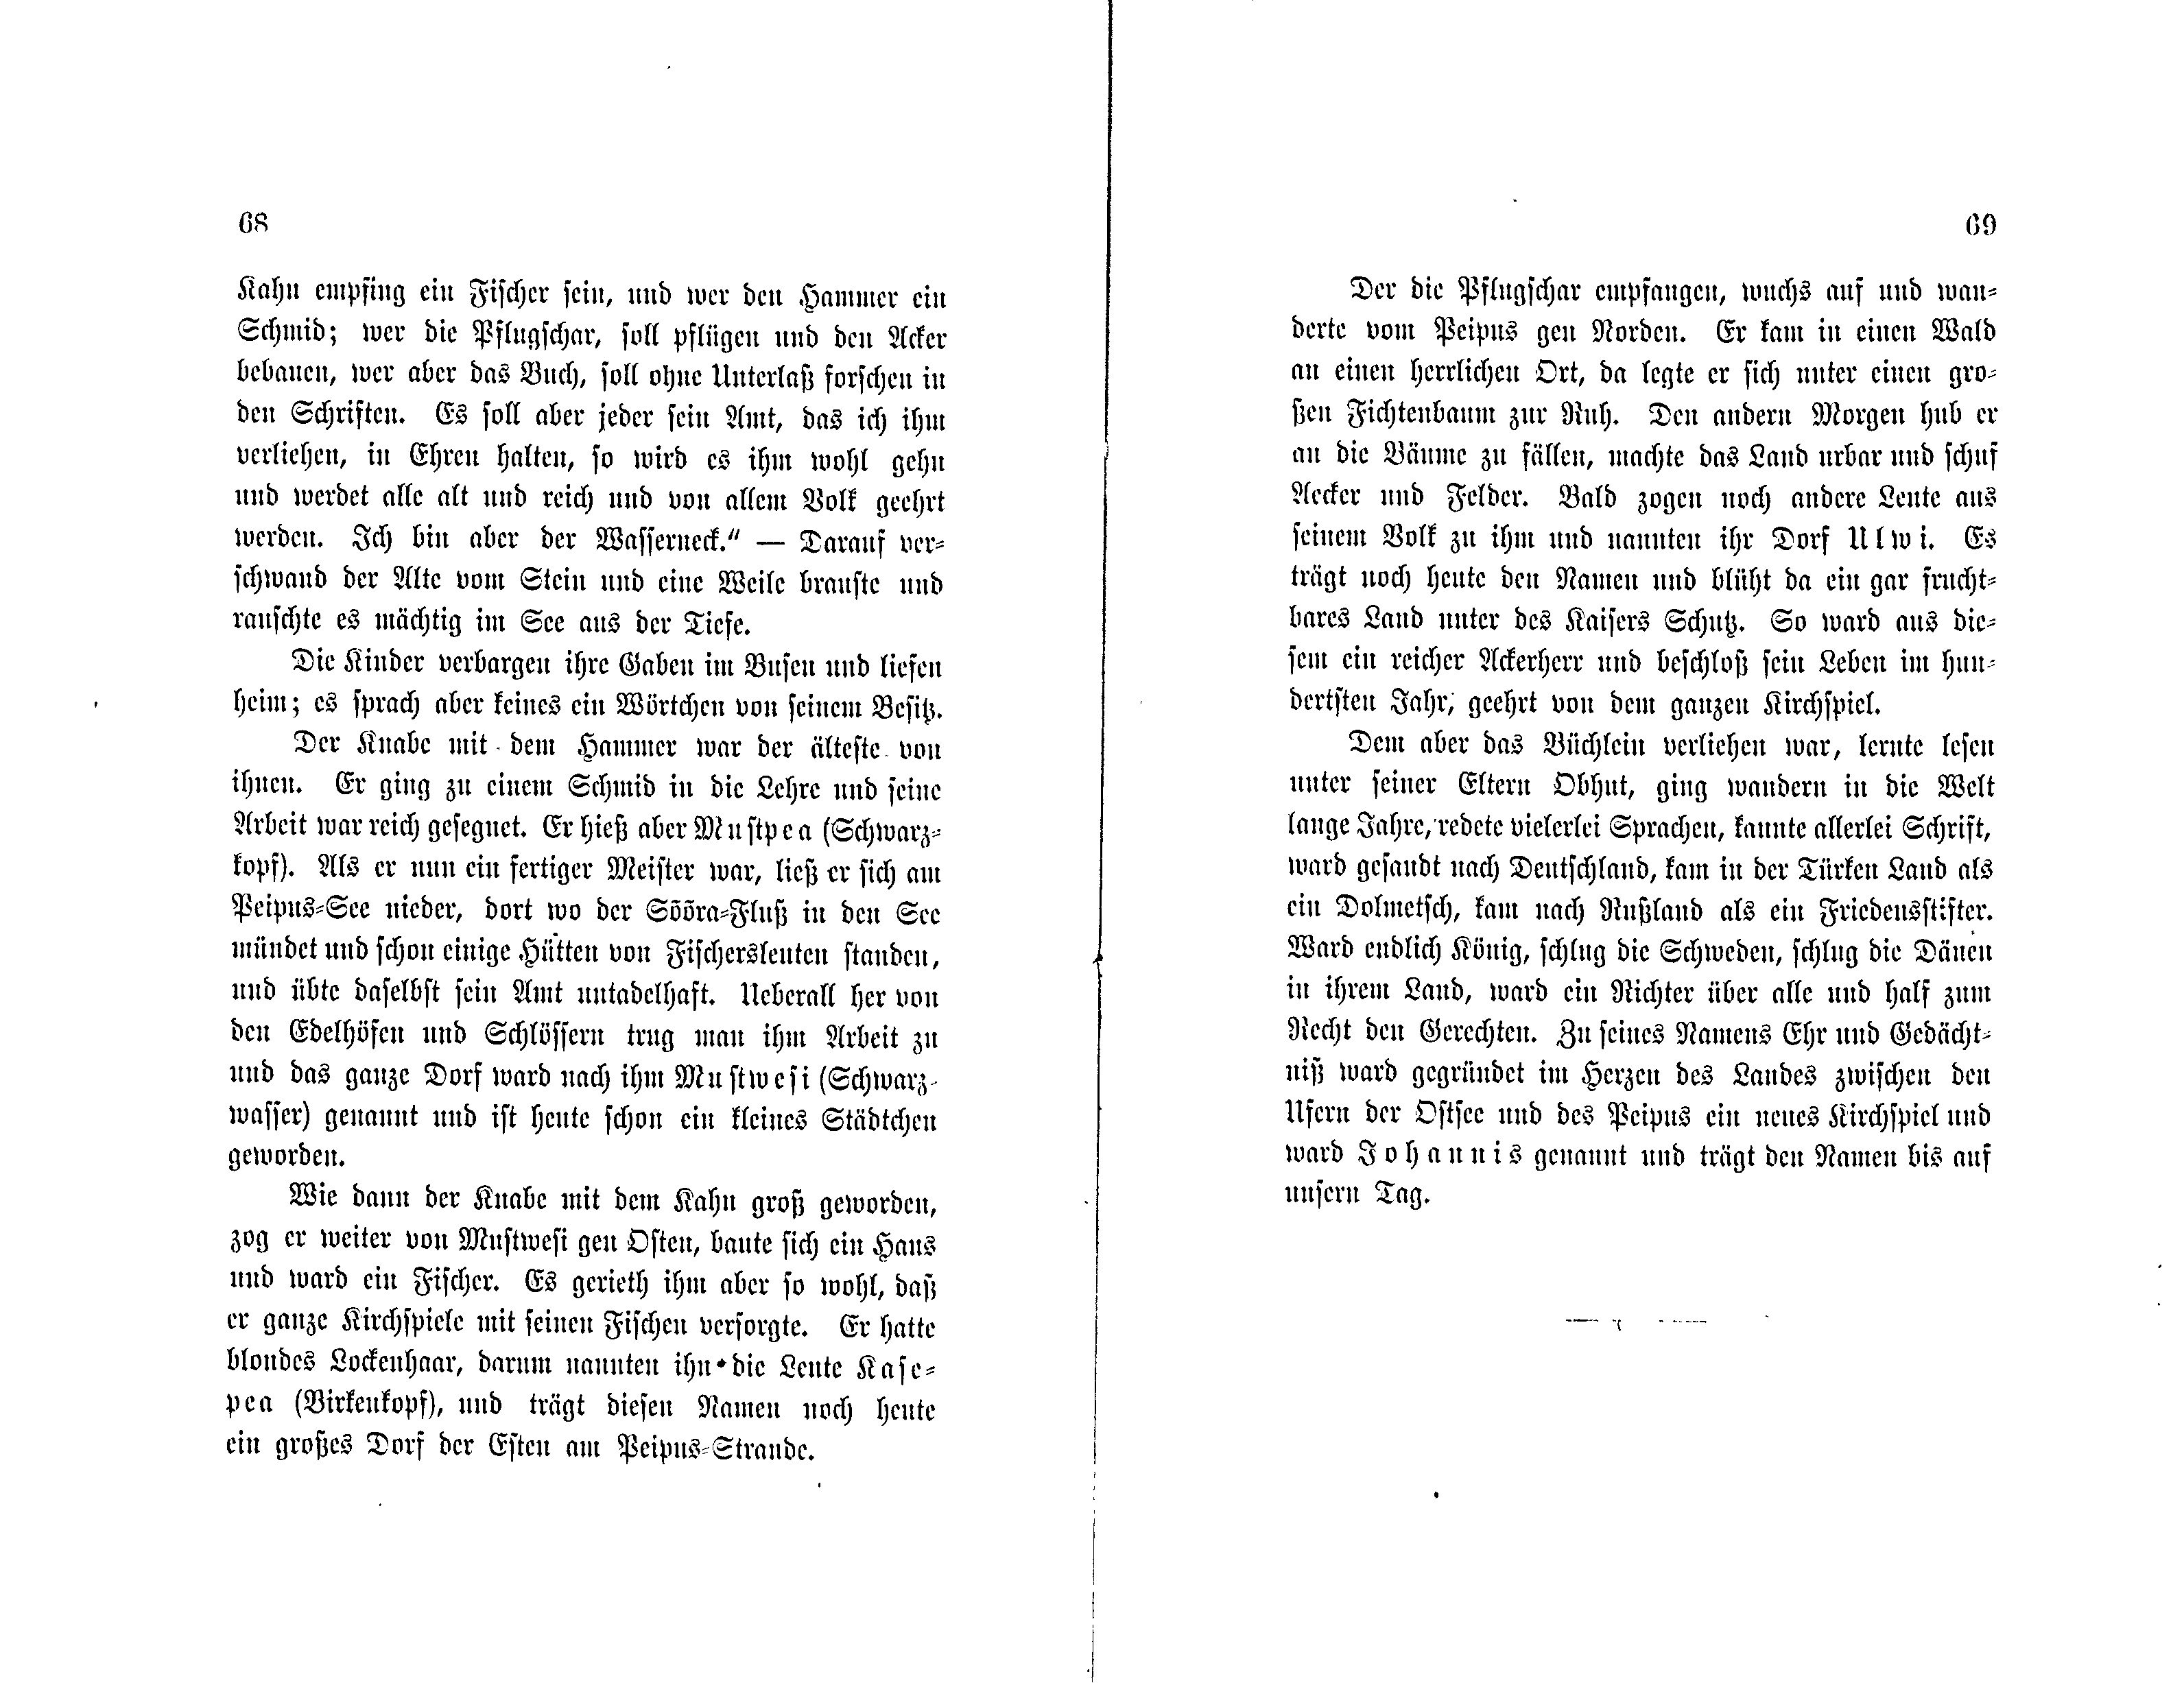 Märchen und Sagen des estnischen Volkes [1] (1881) | 36. (68-69) Main body of text